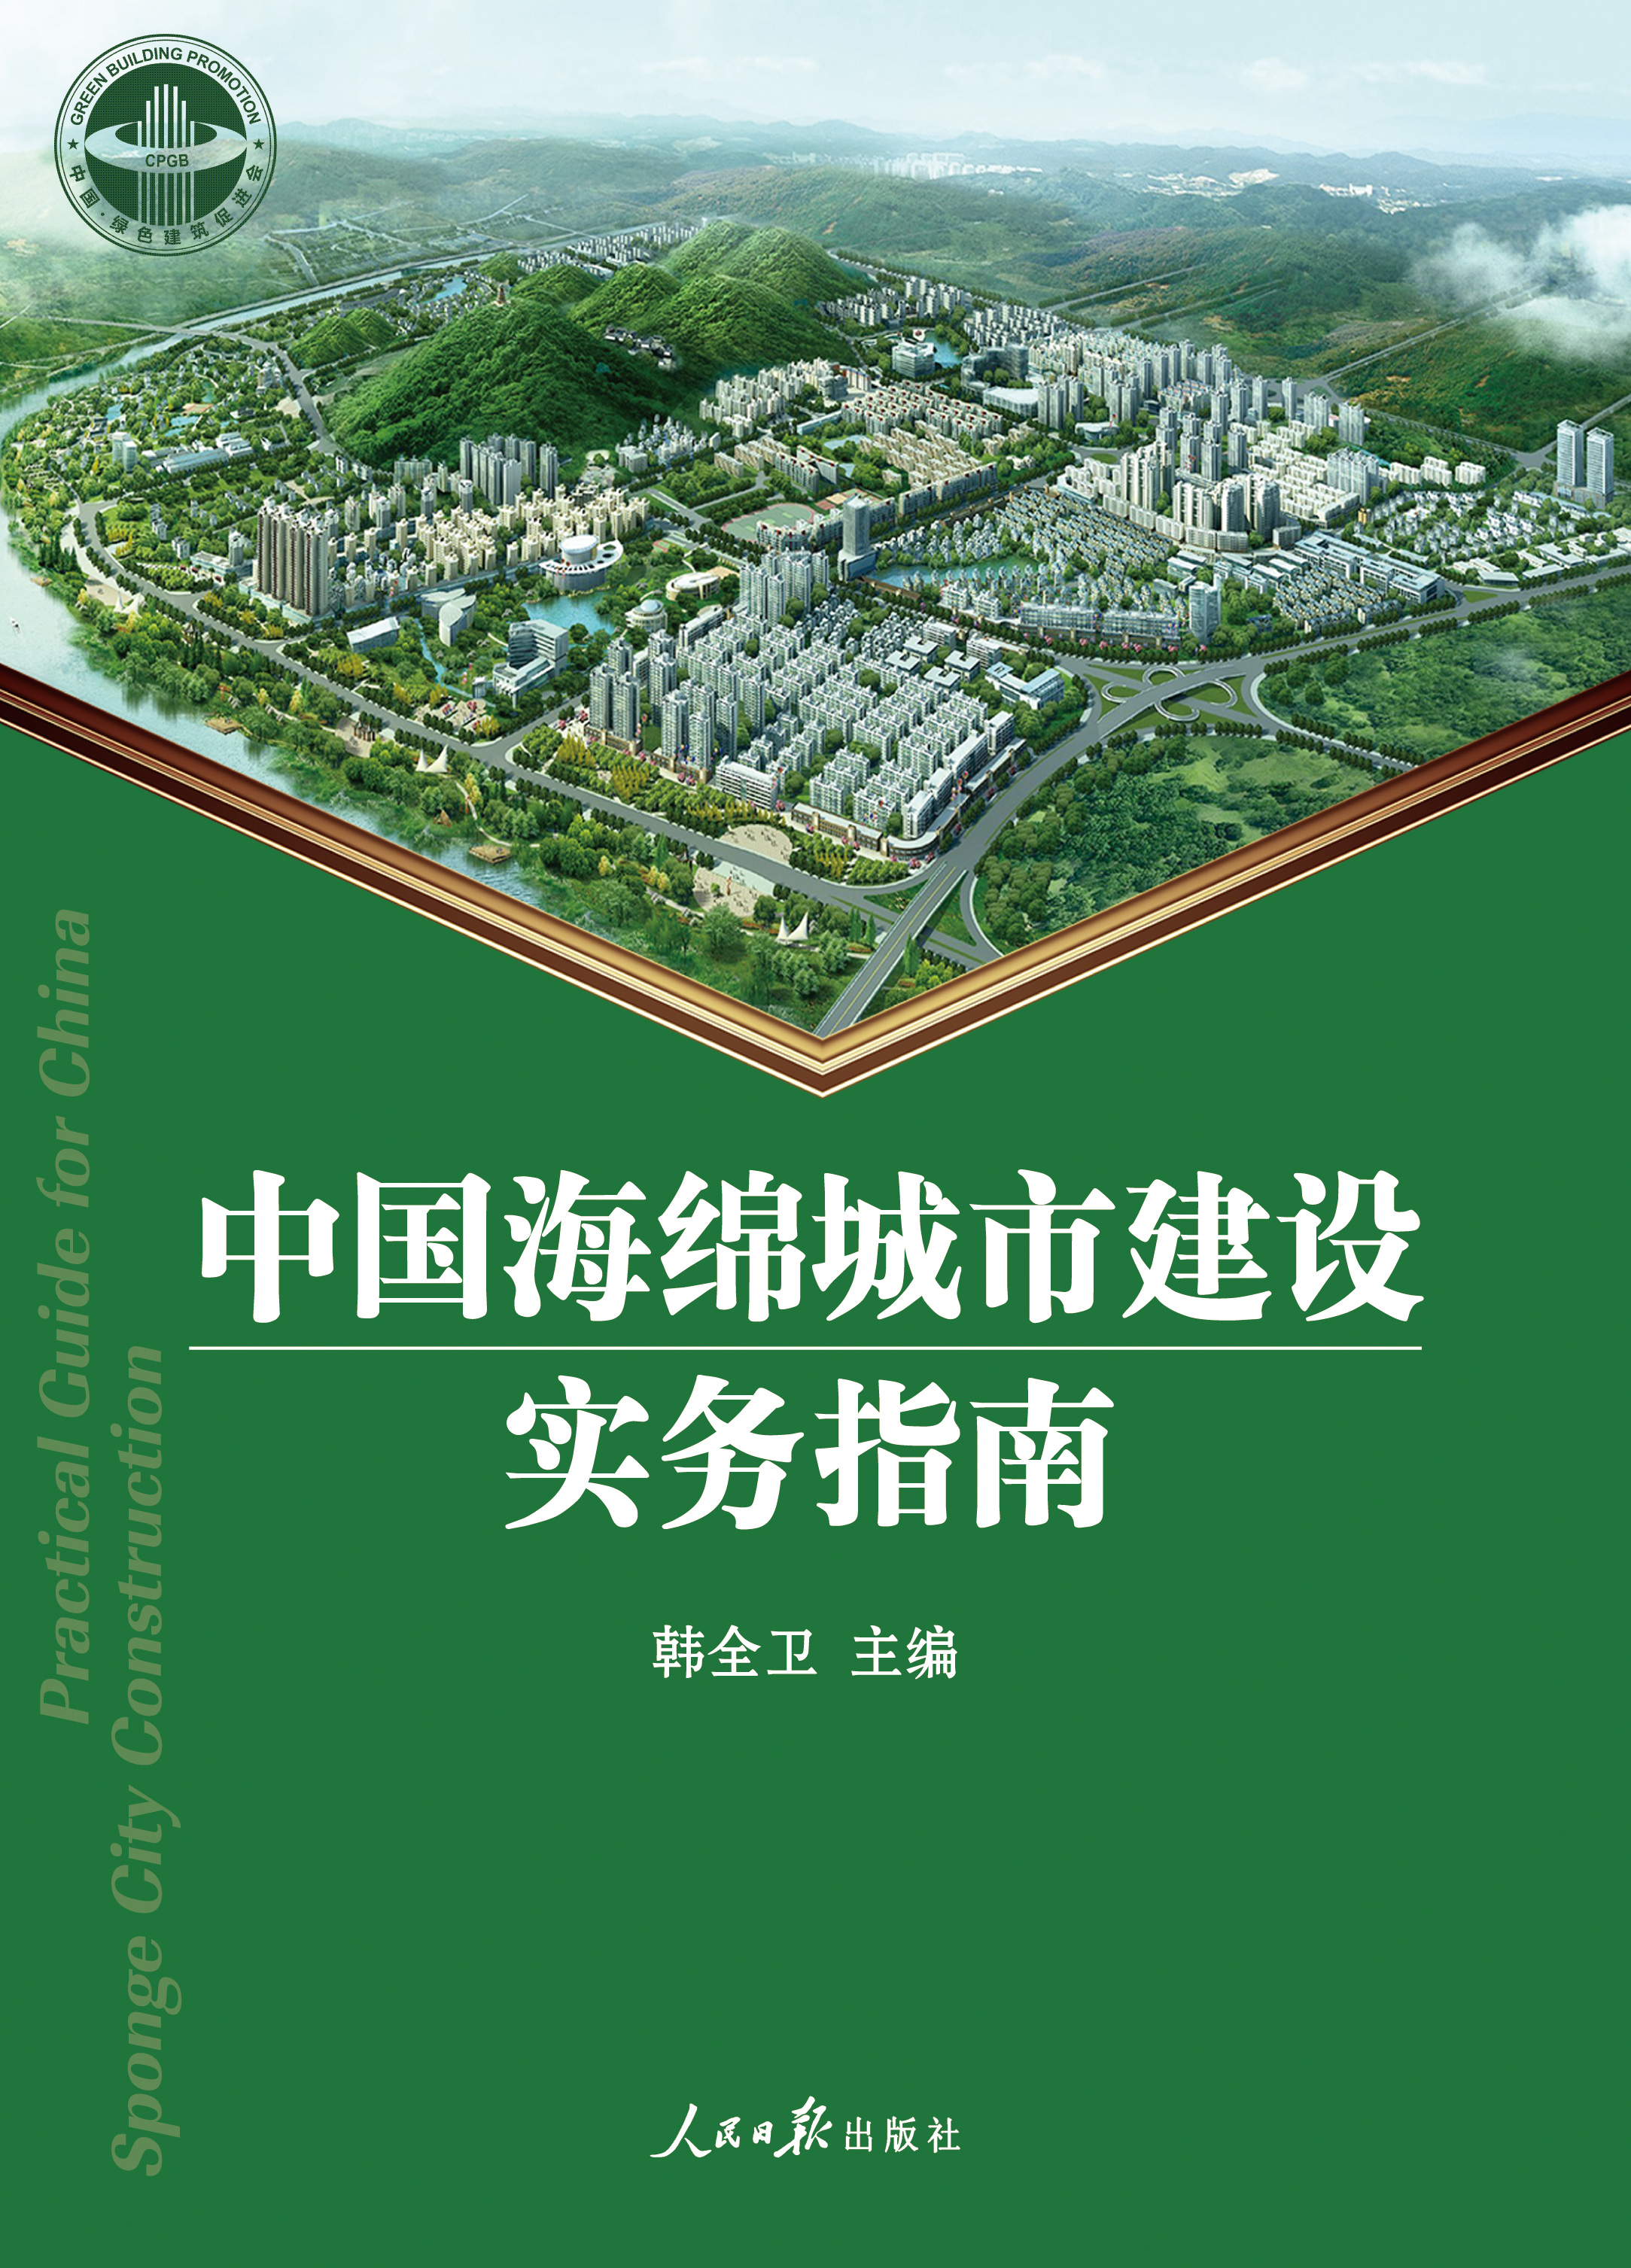 中國海綿城市建設實務指南